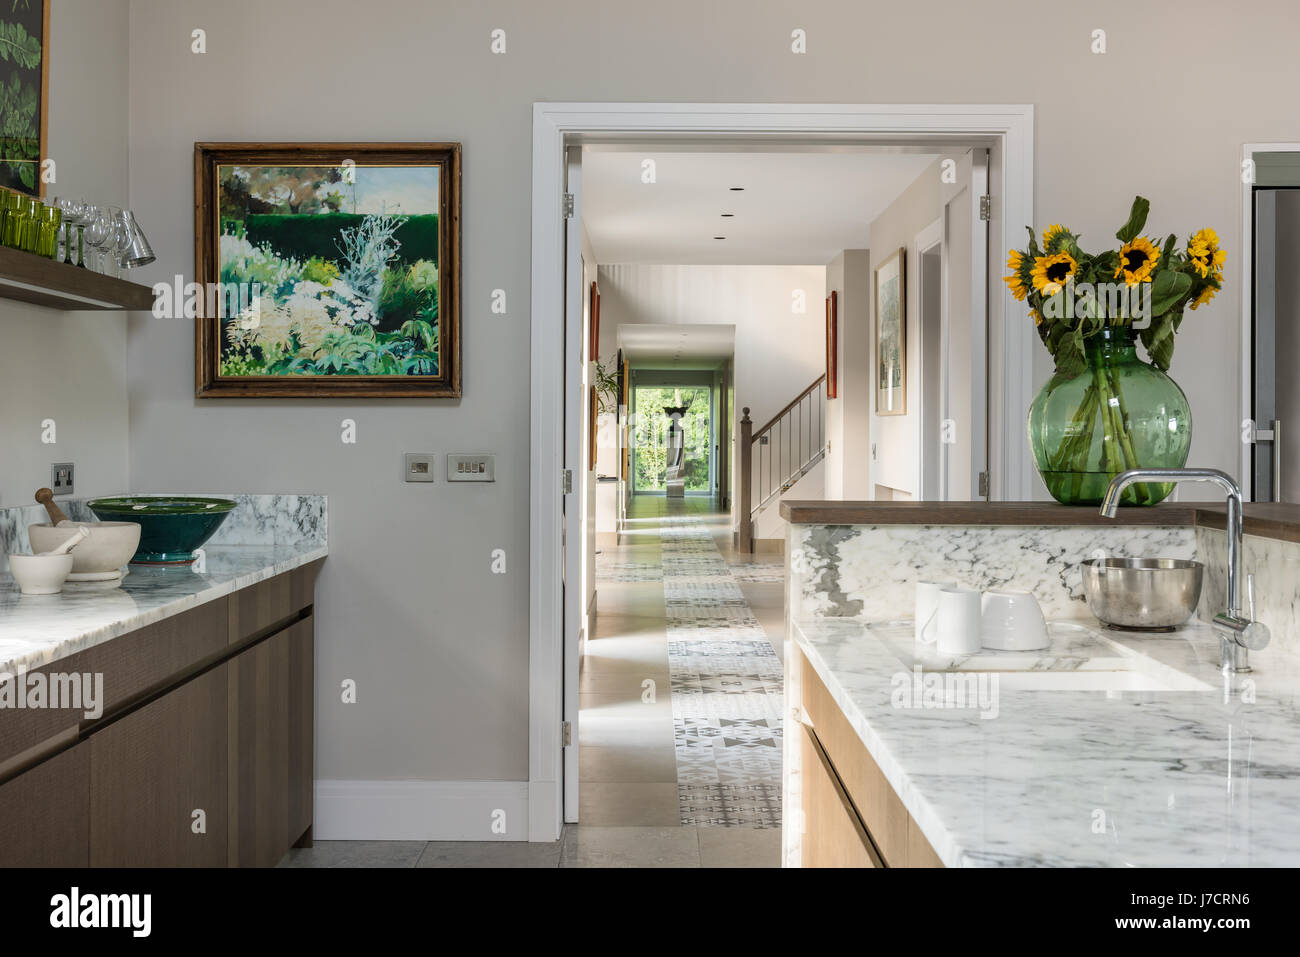 Sonnenblumen und gerahmte Bilder in Marmor Küche mit Blick auf interne Eingang Stockfoto